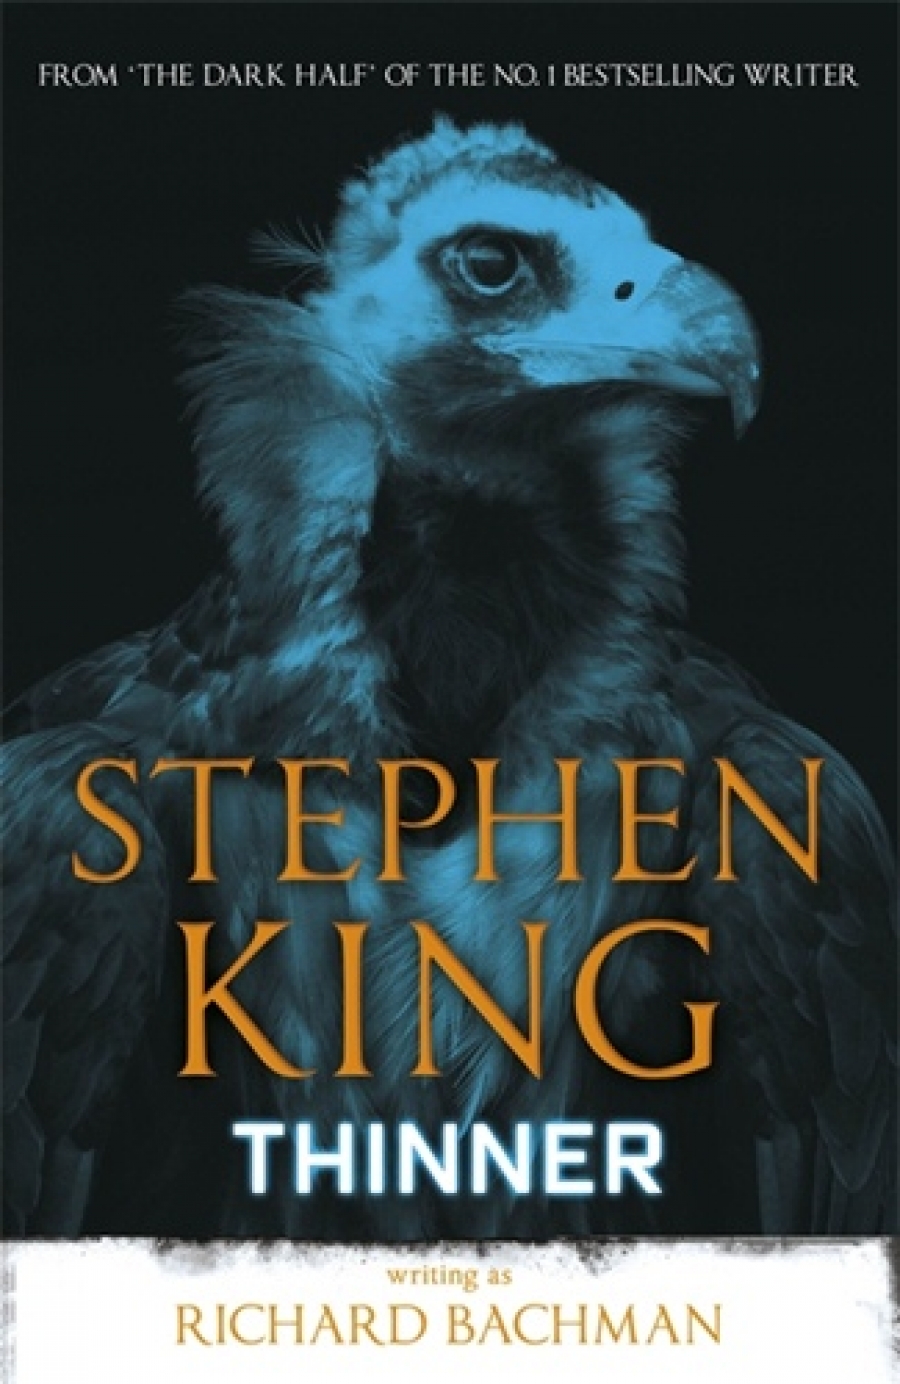 King, Stephen Thinner 